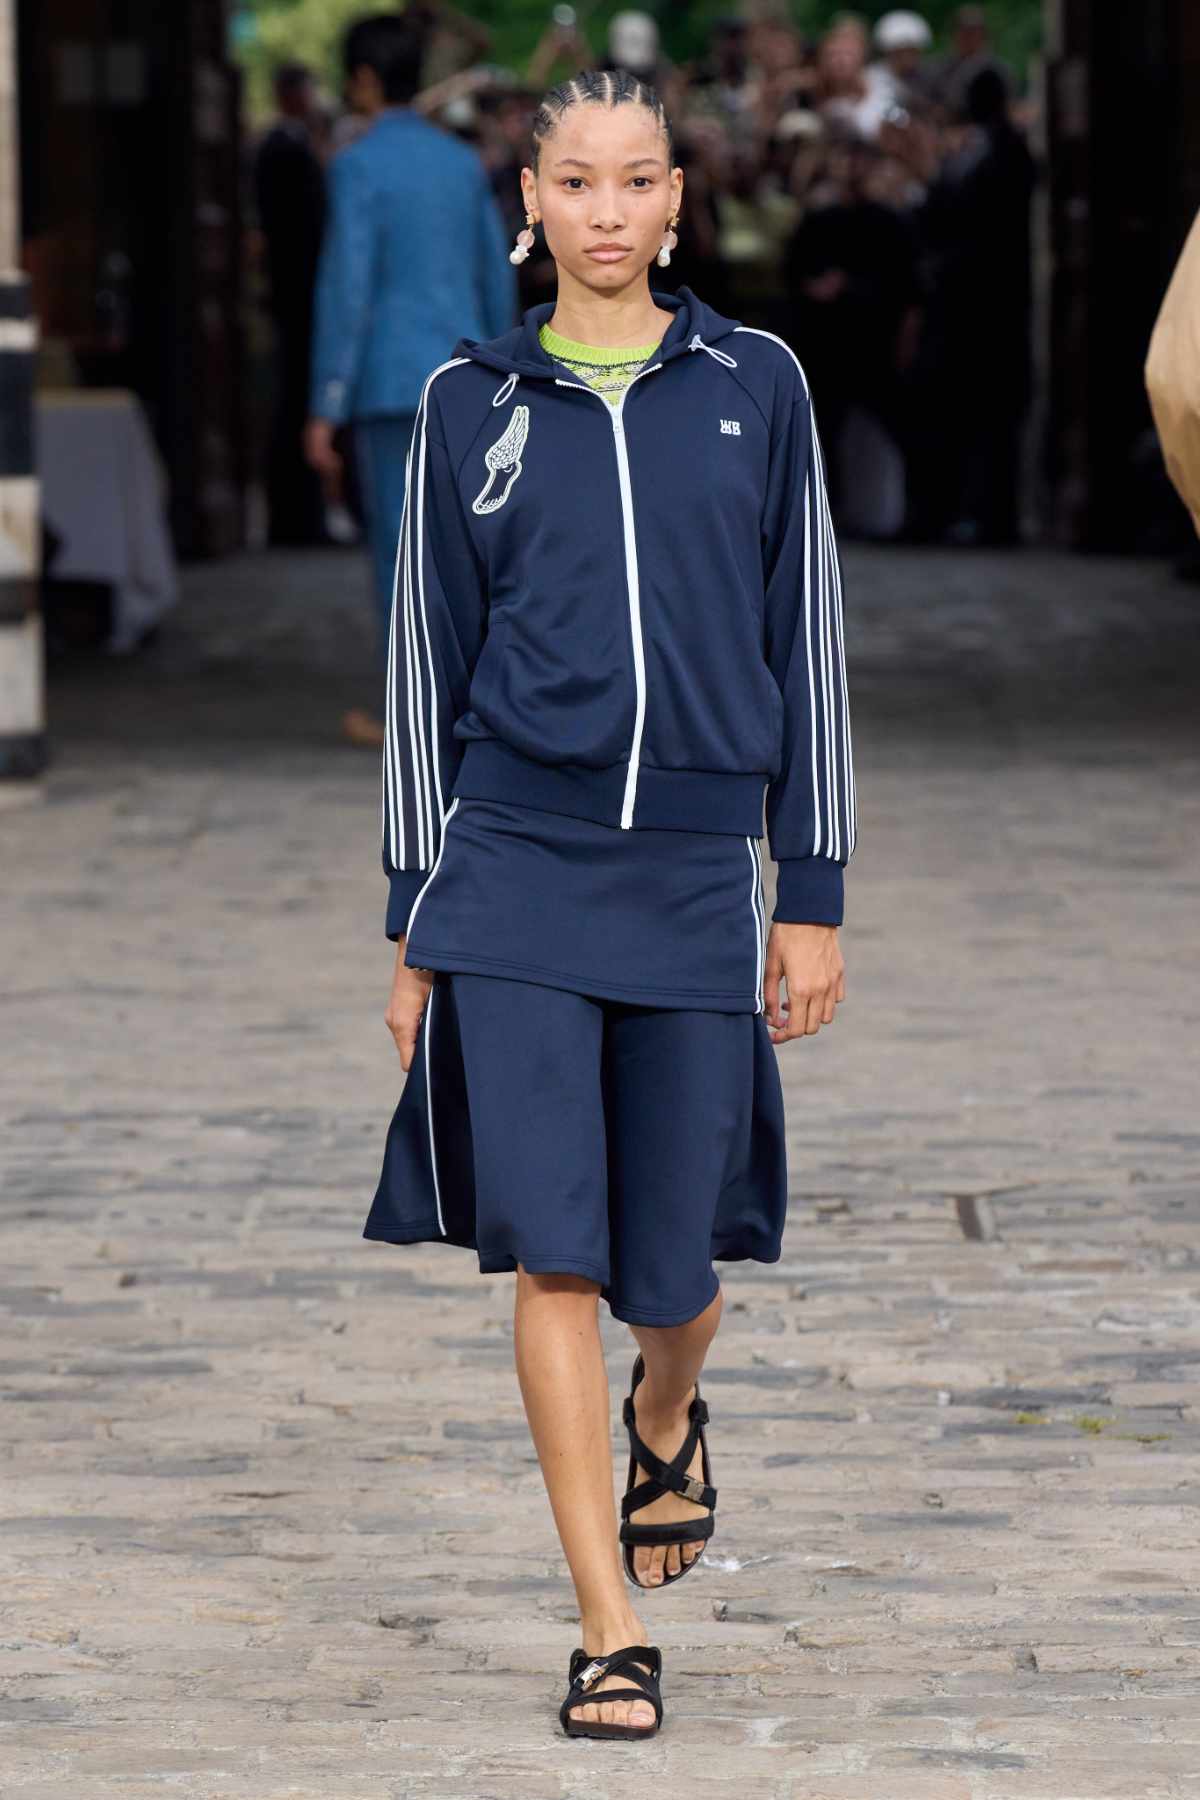 Adidas x Wales Bonner is grown-up sportswear